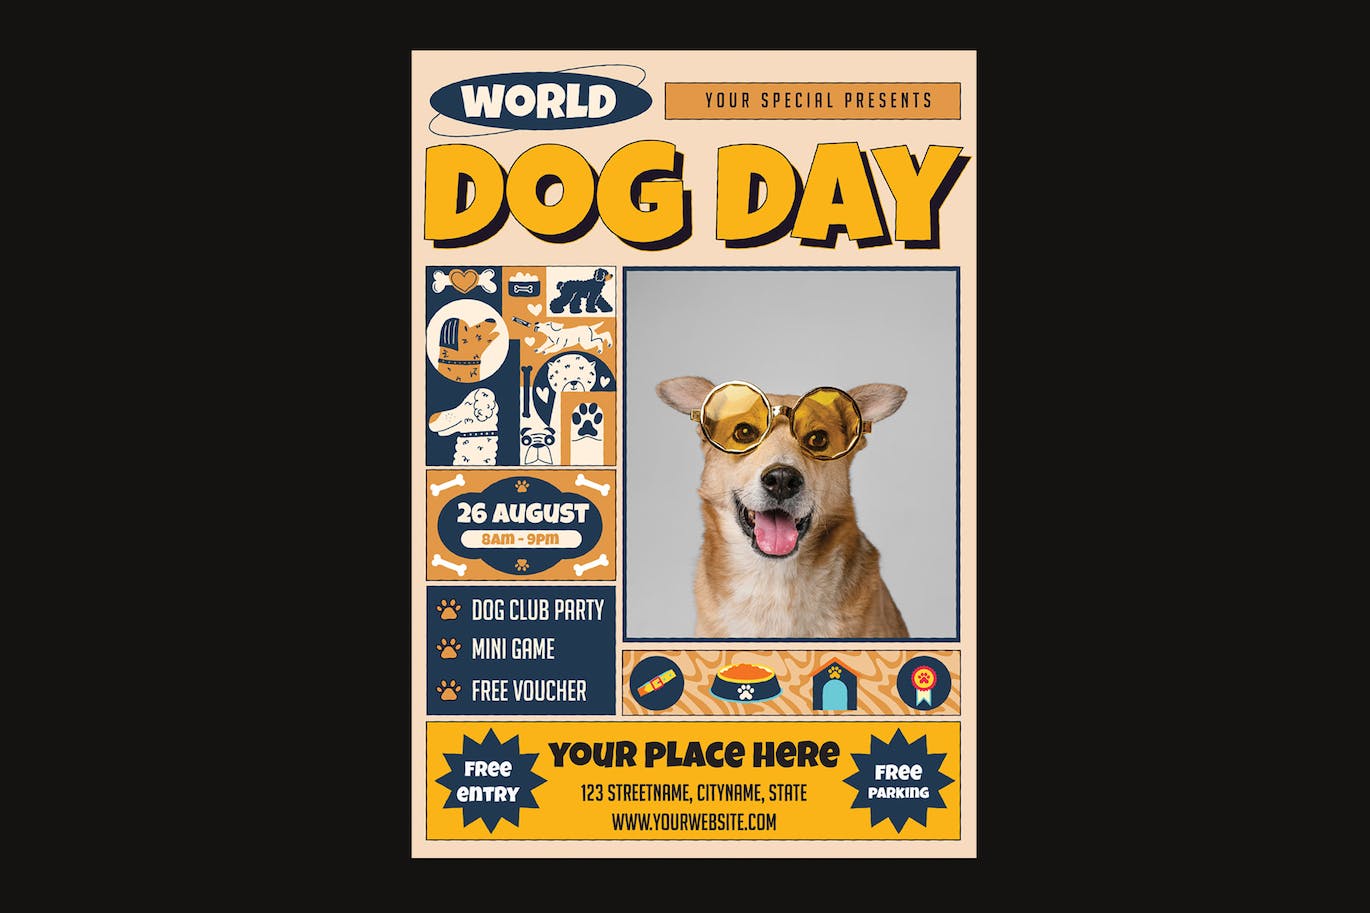 宠物活动日传单设计素材 Dog Day Flyer